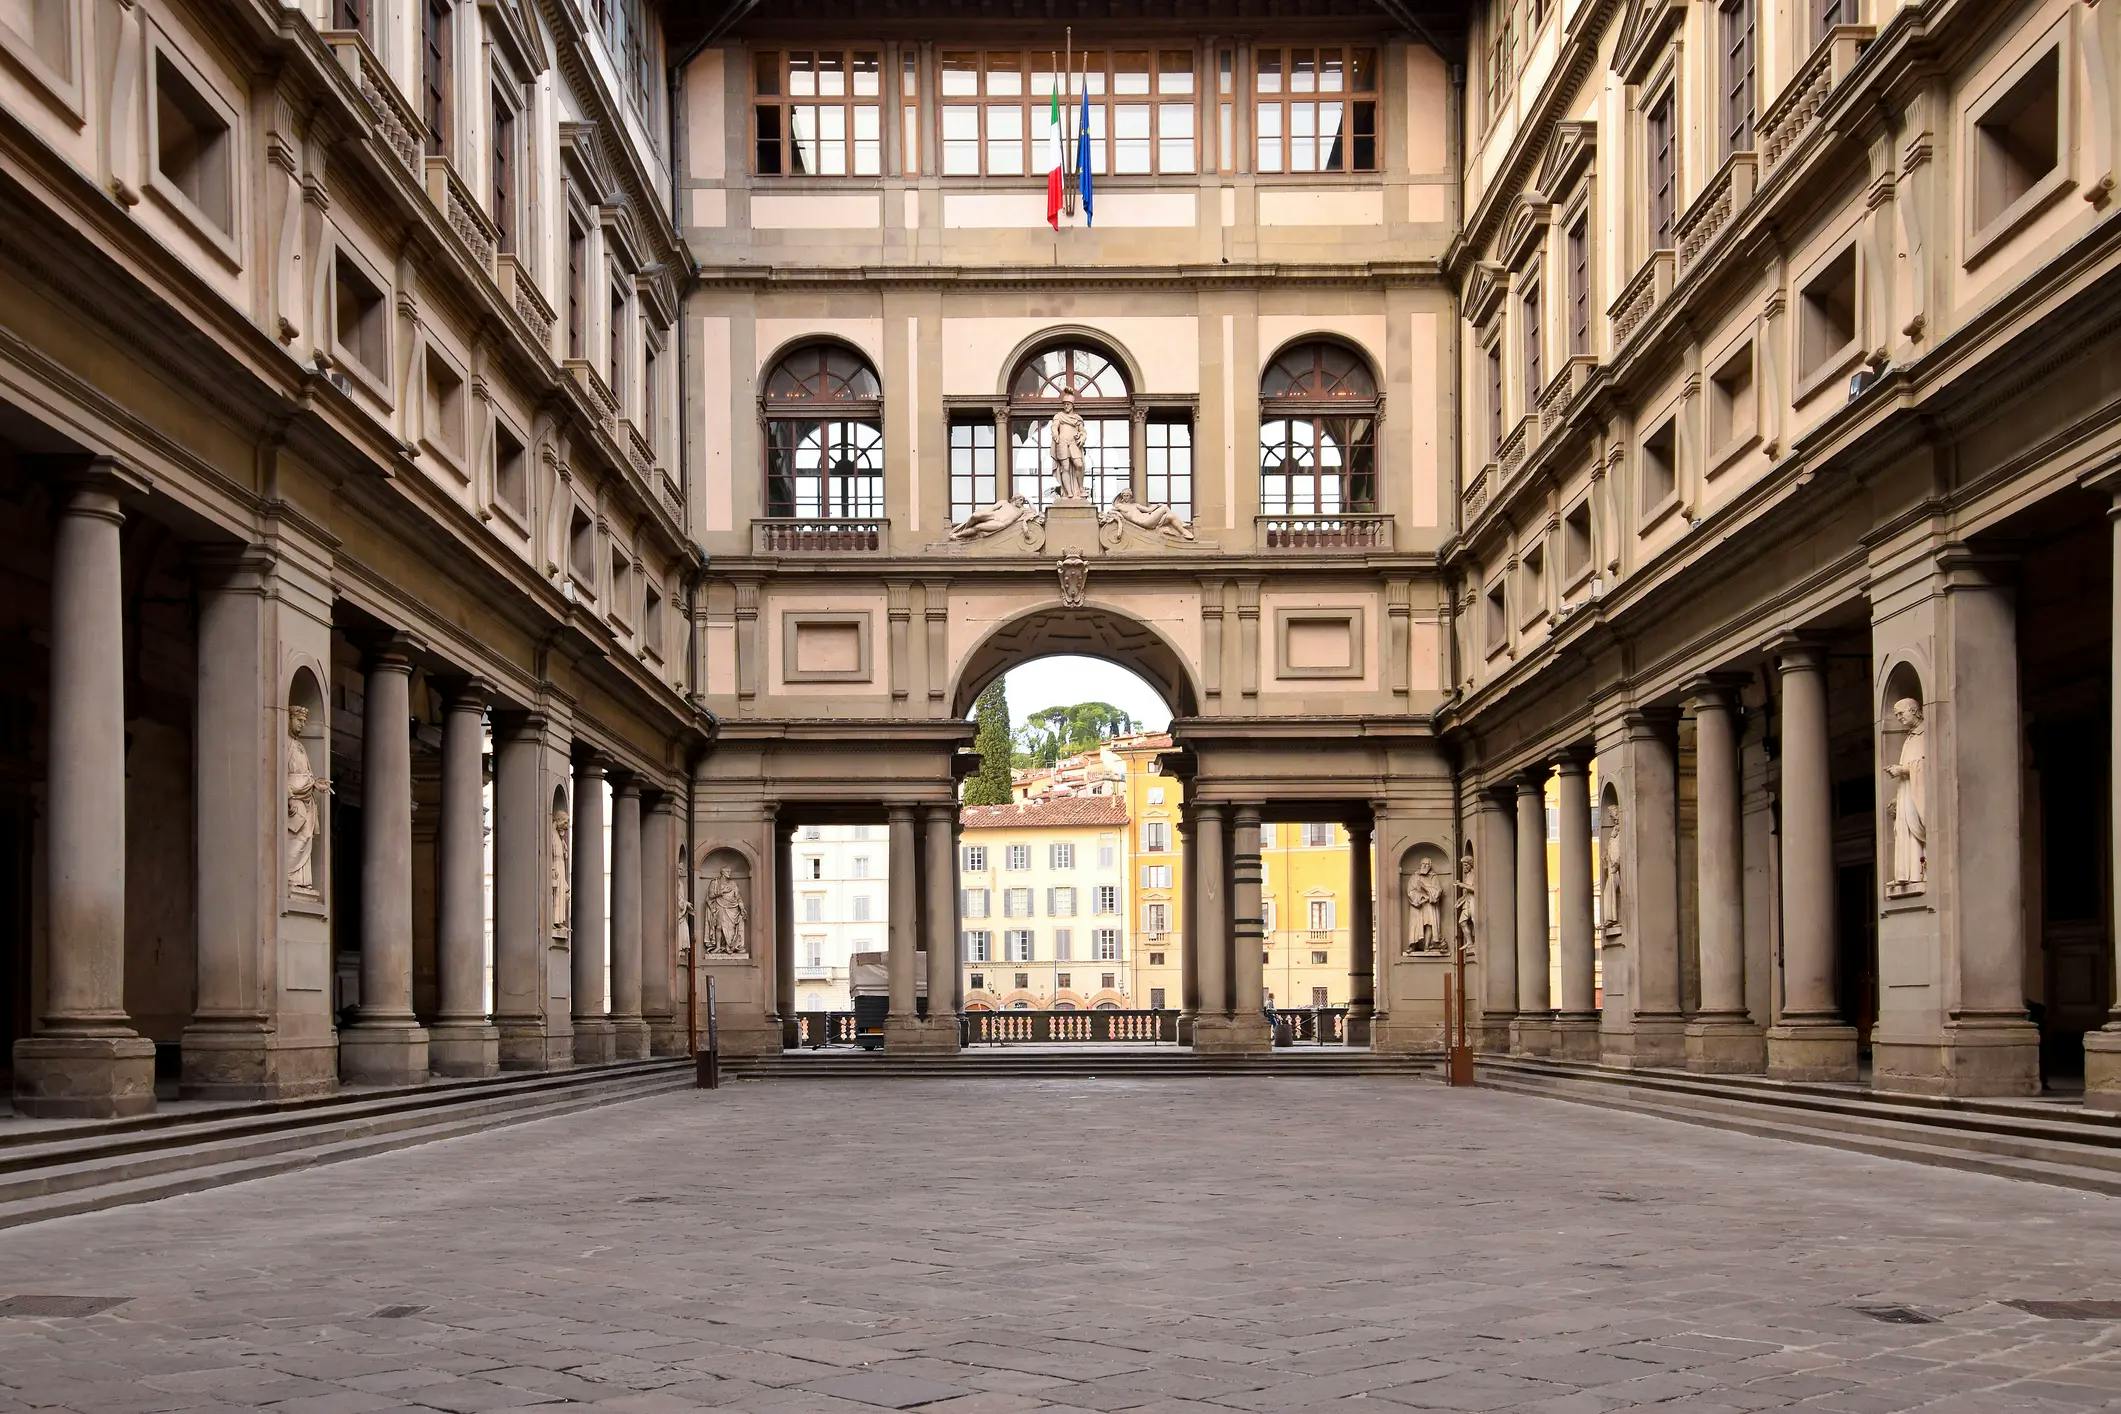 Uffizi Gallery image